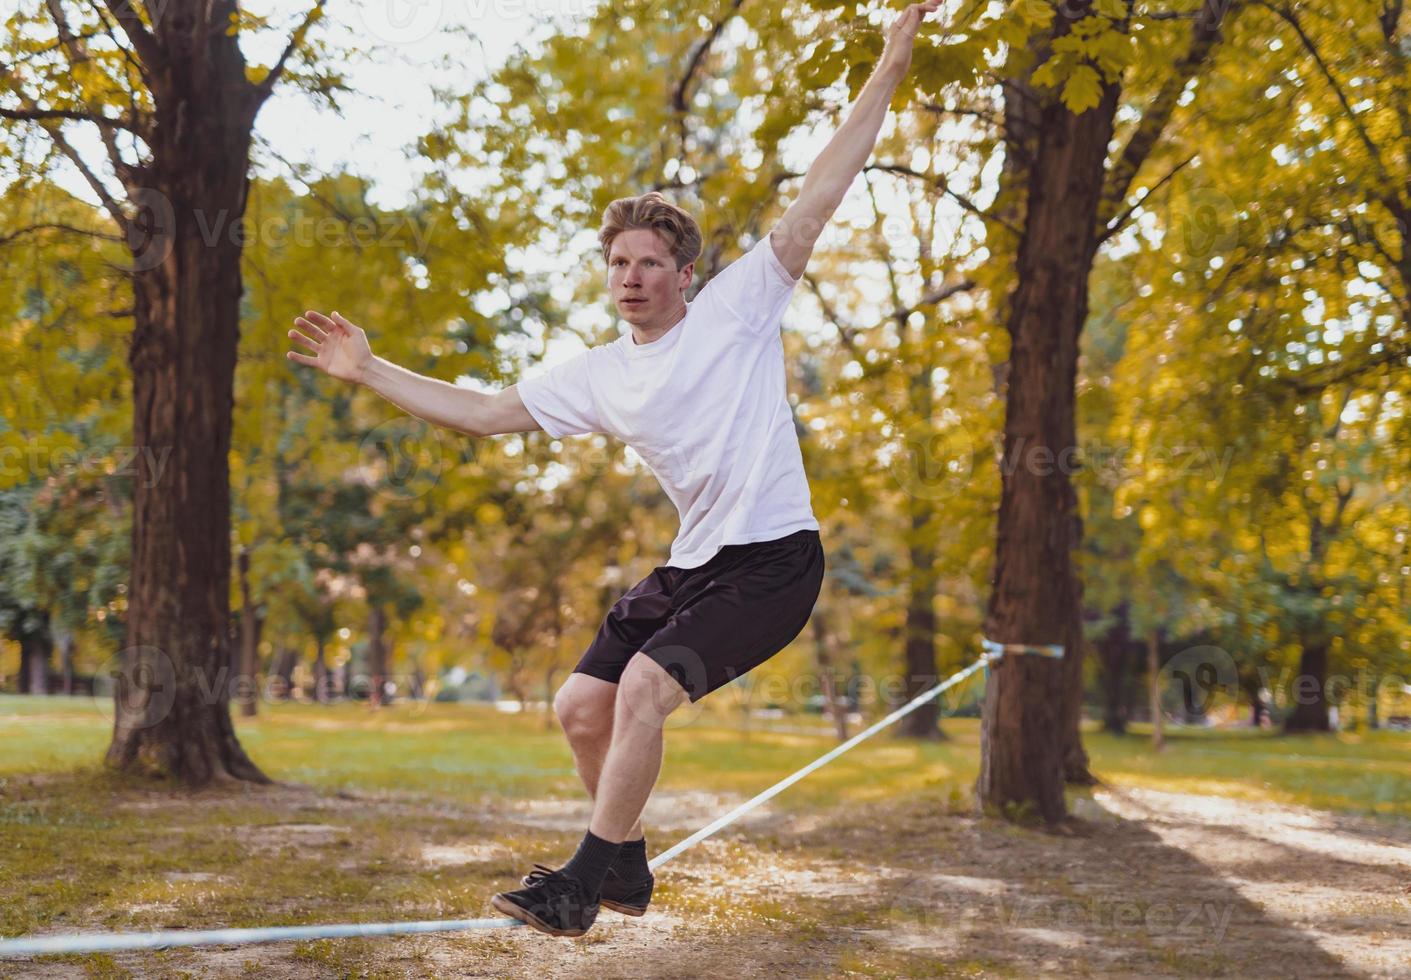 giovane uomo equilibratura e salto su slackline. uomo a passeggio, salto e equilibratura su corda nel parco. foto